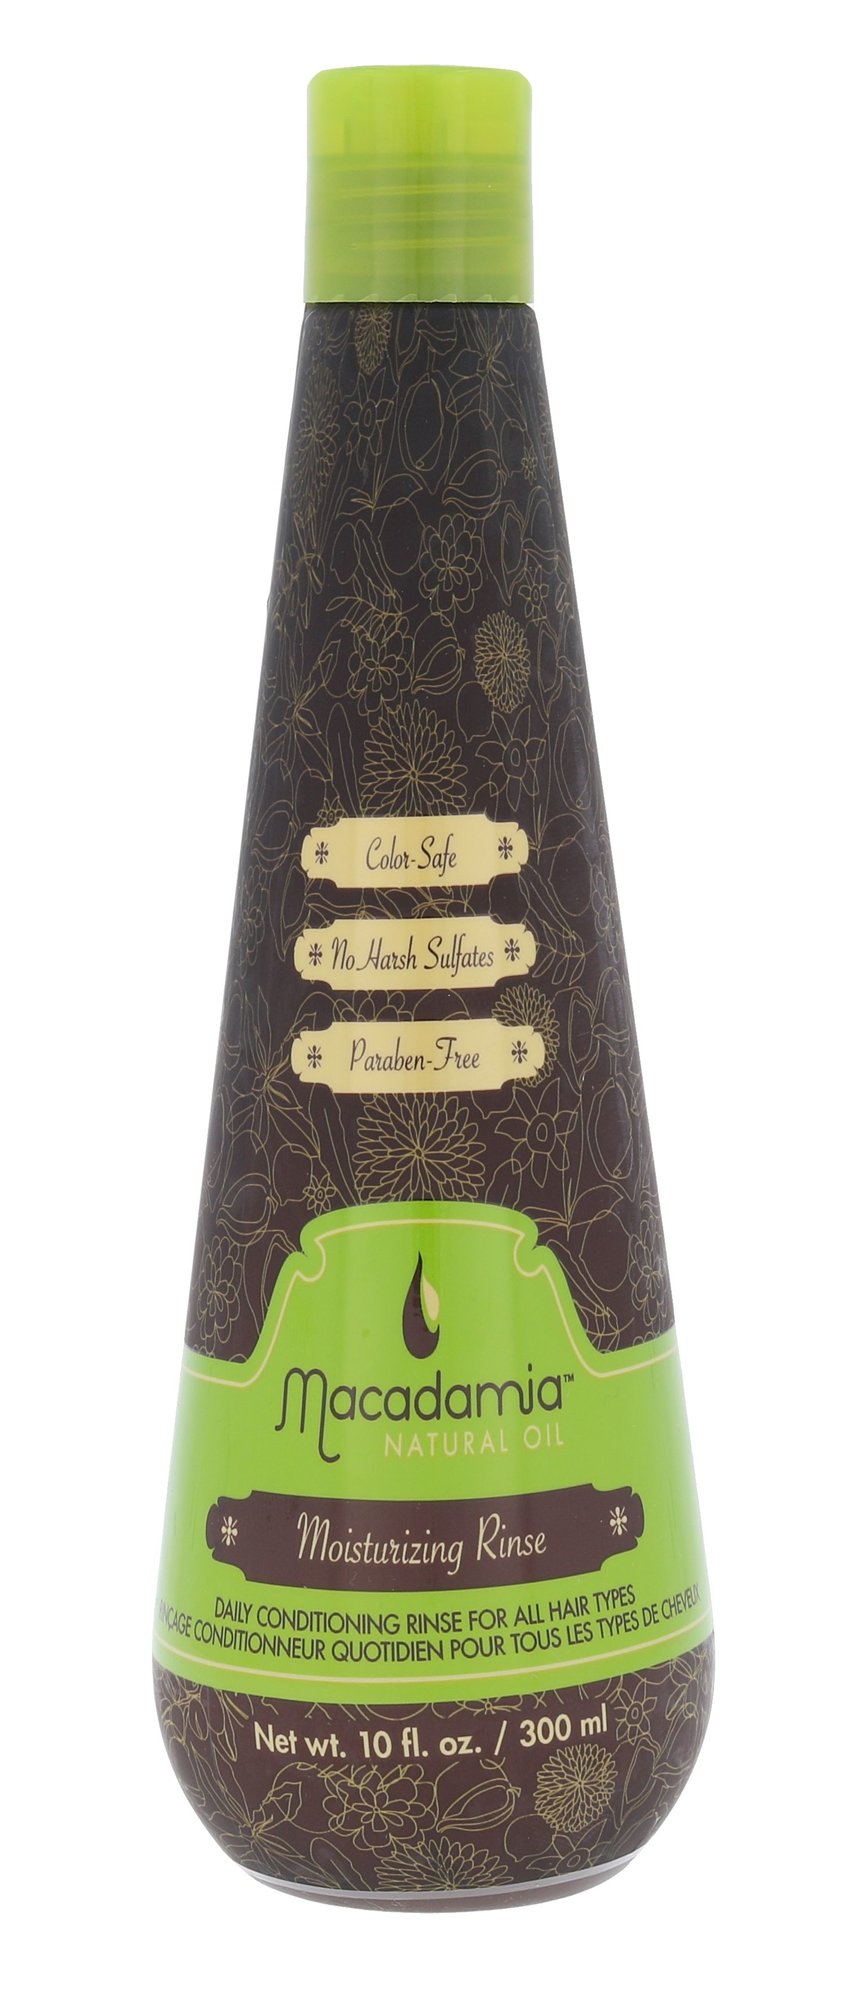 Macadamia Moisturizing Rinse